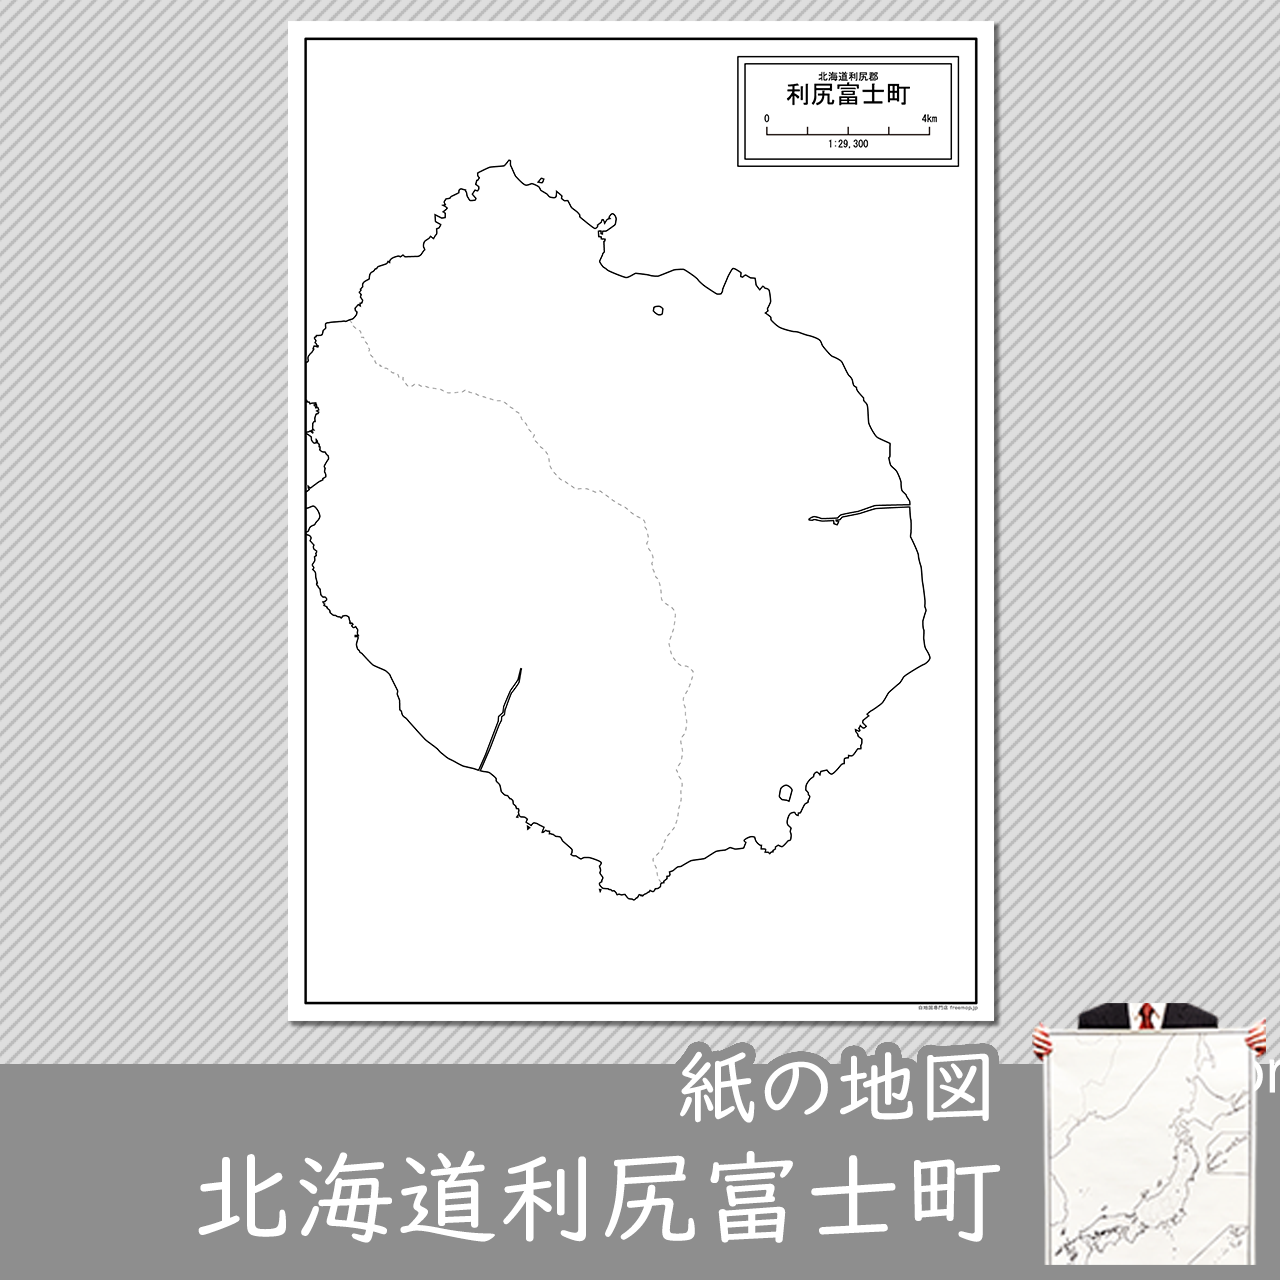 利尻富士町の紙の白地図のサムネイル